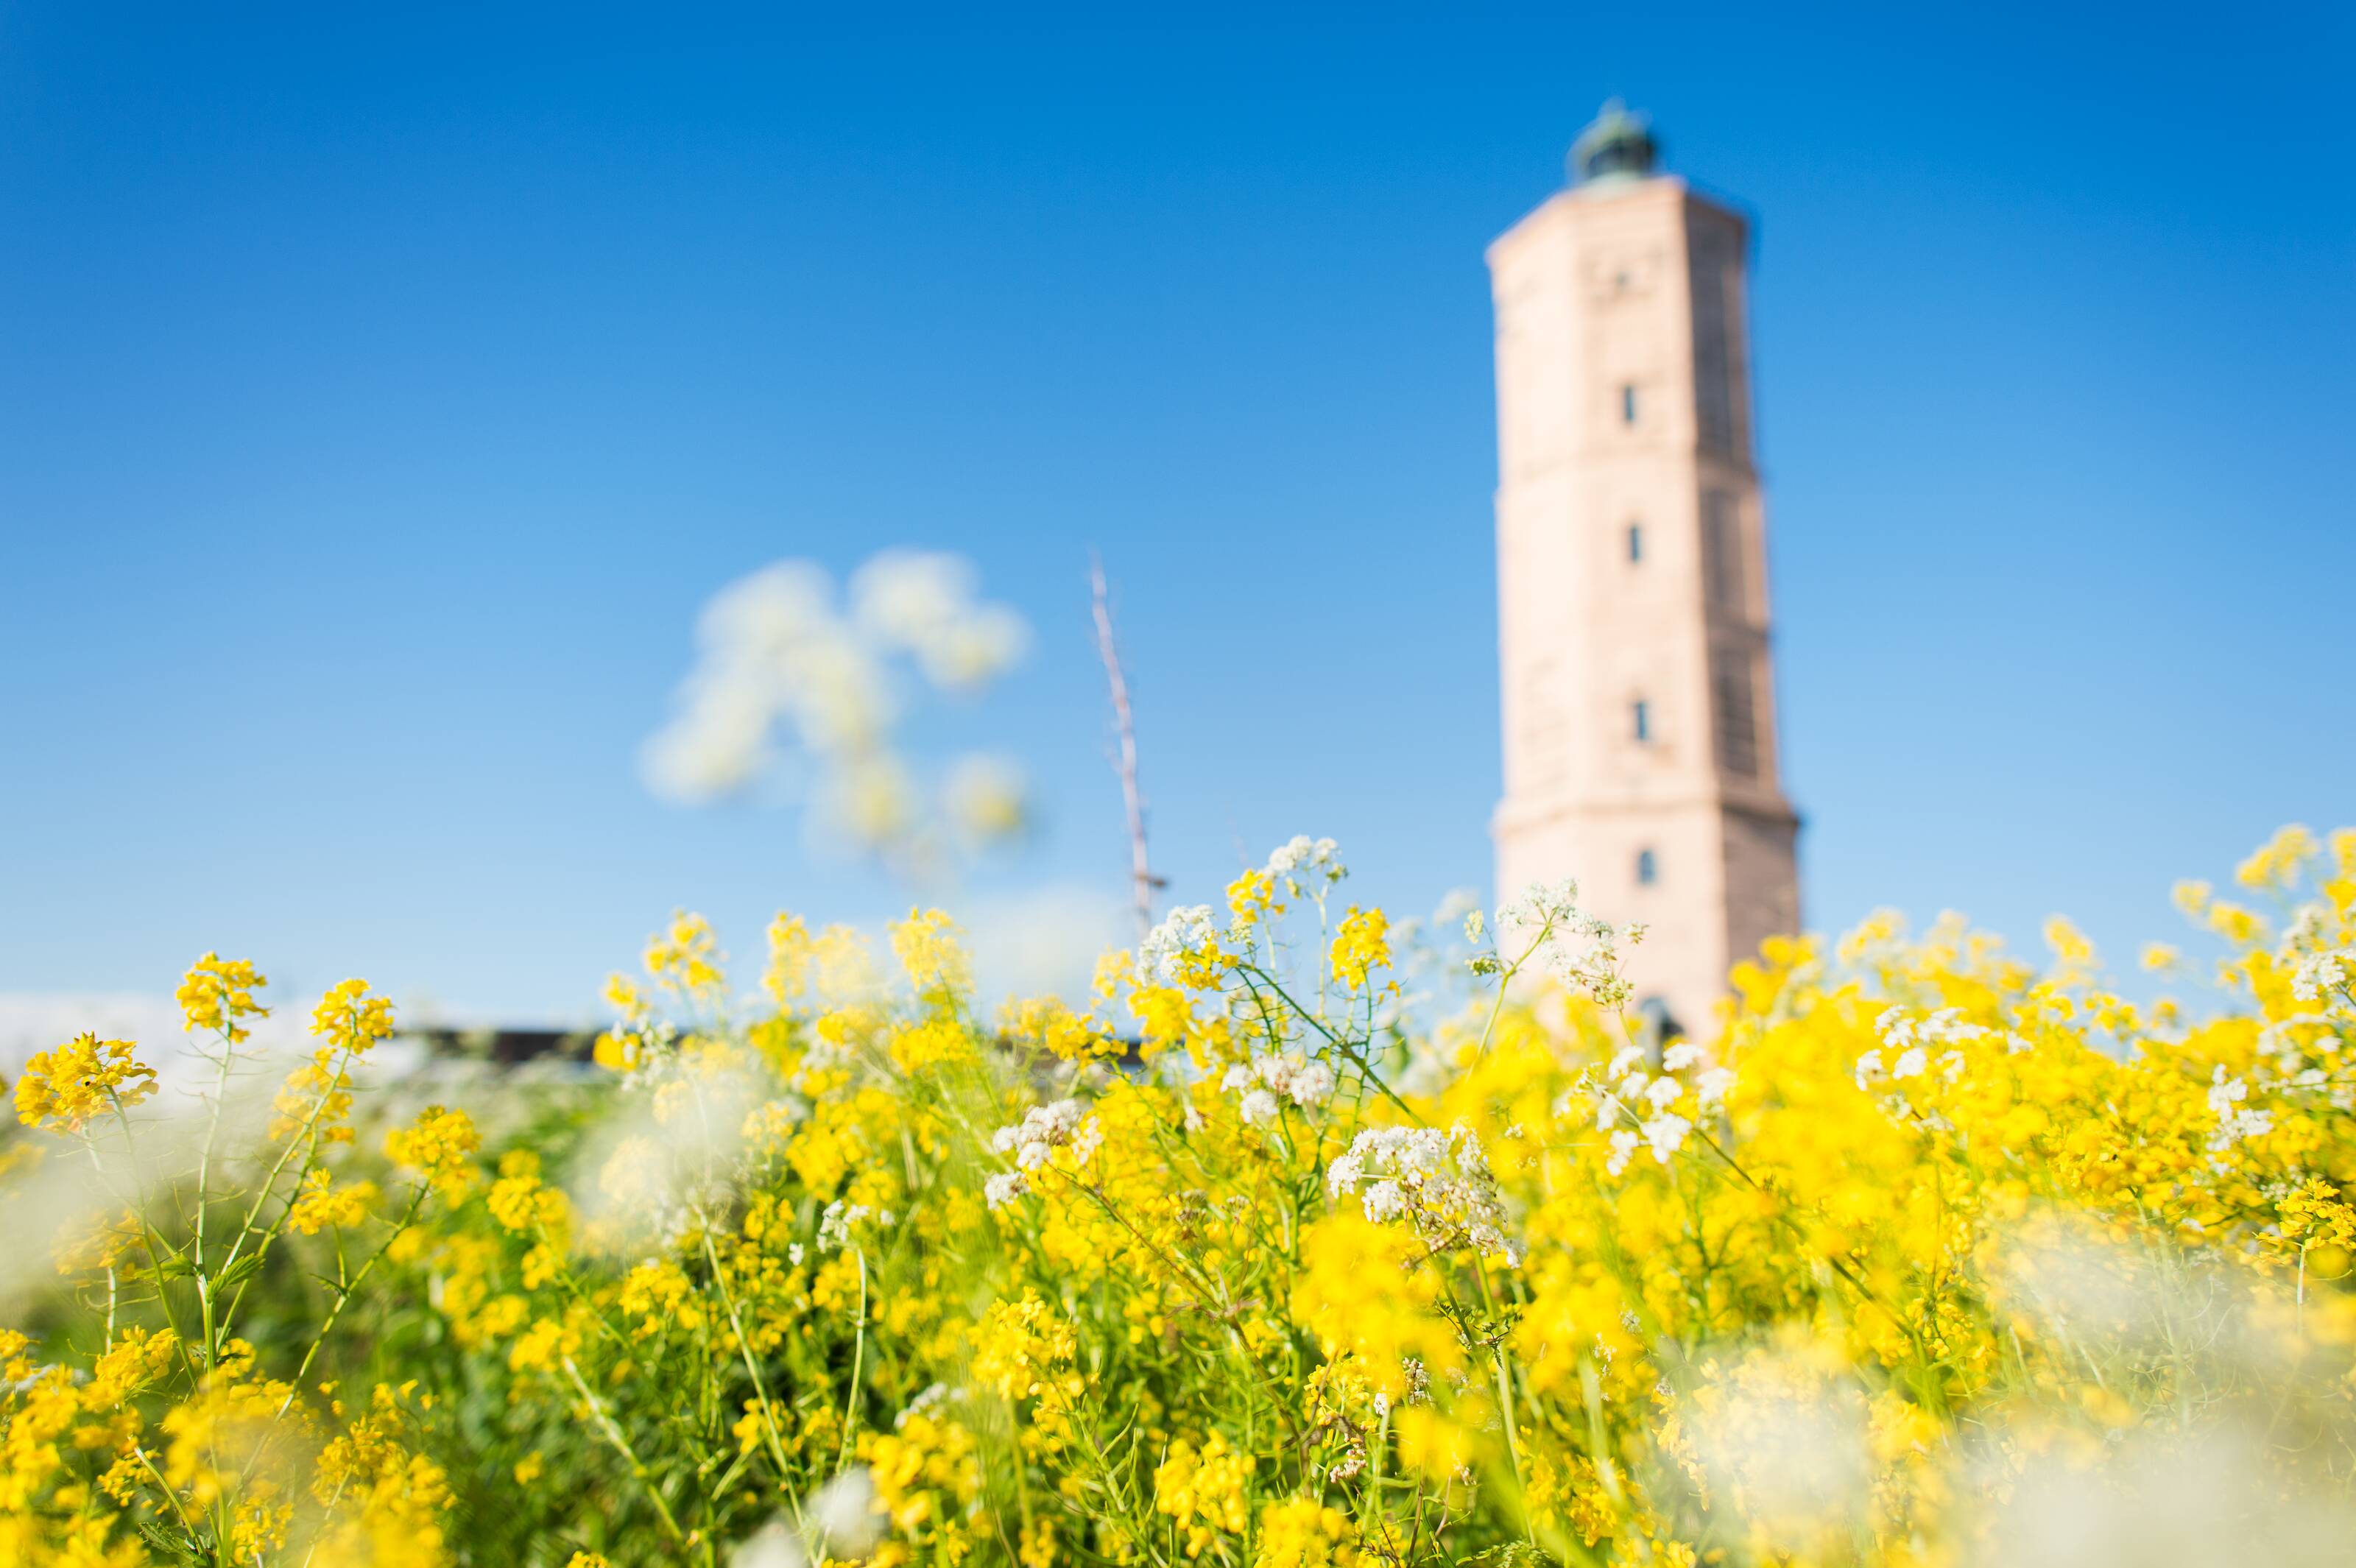 Le phare de Söderskär entouré de la faune finlandaise dans l’archipel de Porvoo en Finlande